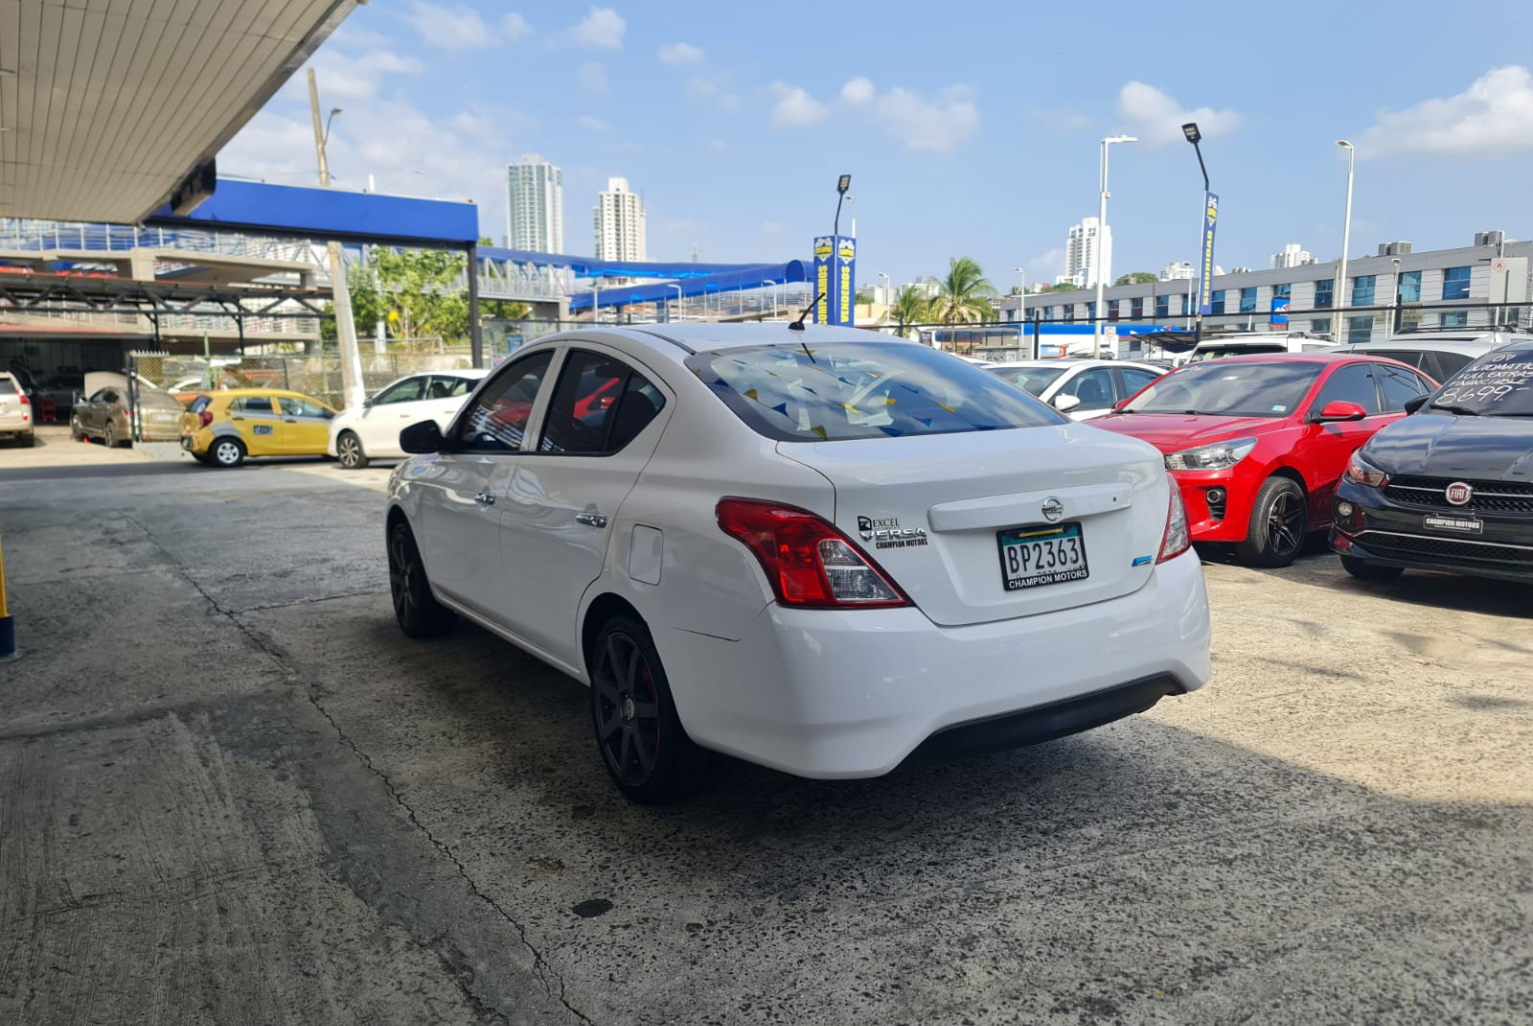 Nissan Versa 2018 Automático color Blanco, Imagen #6